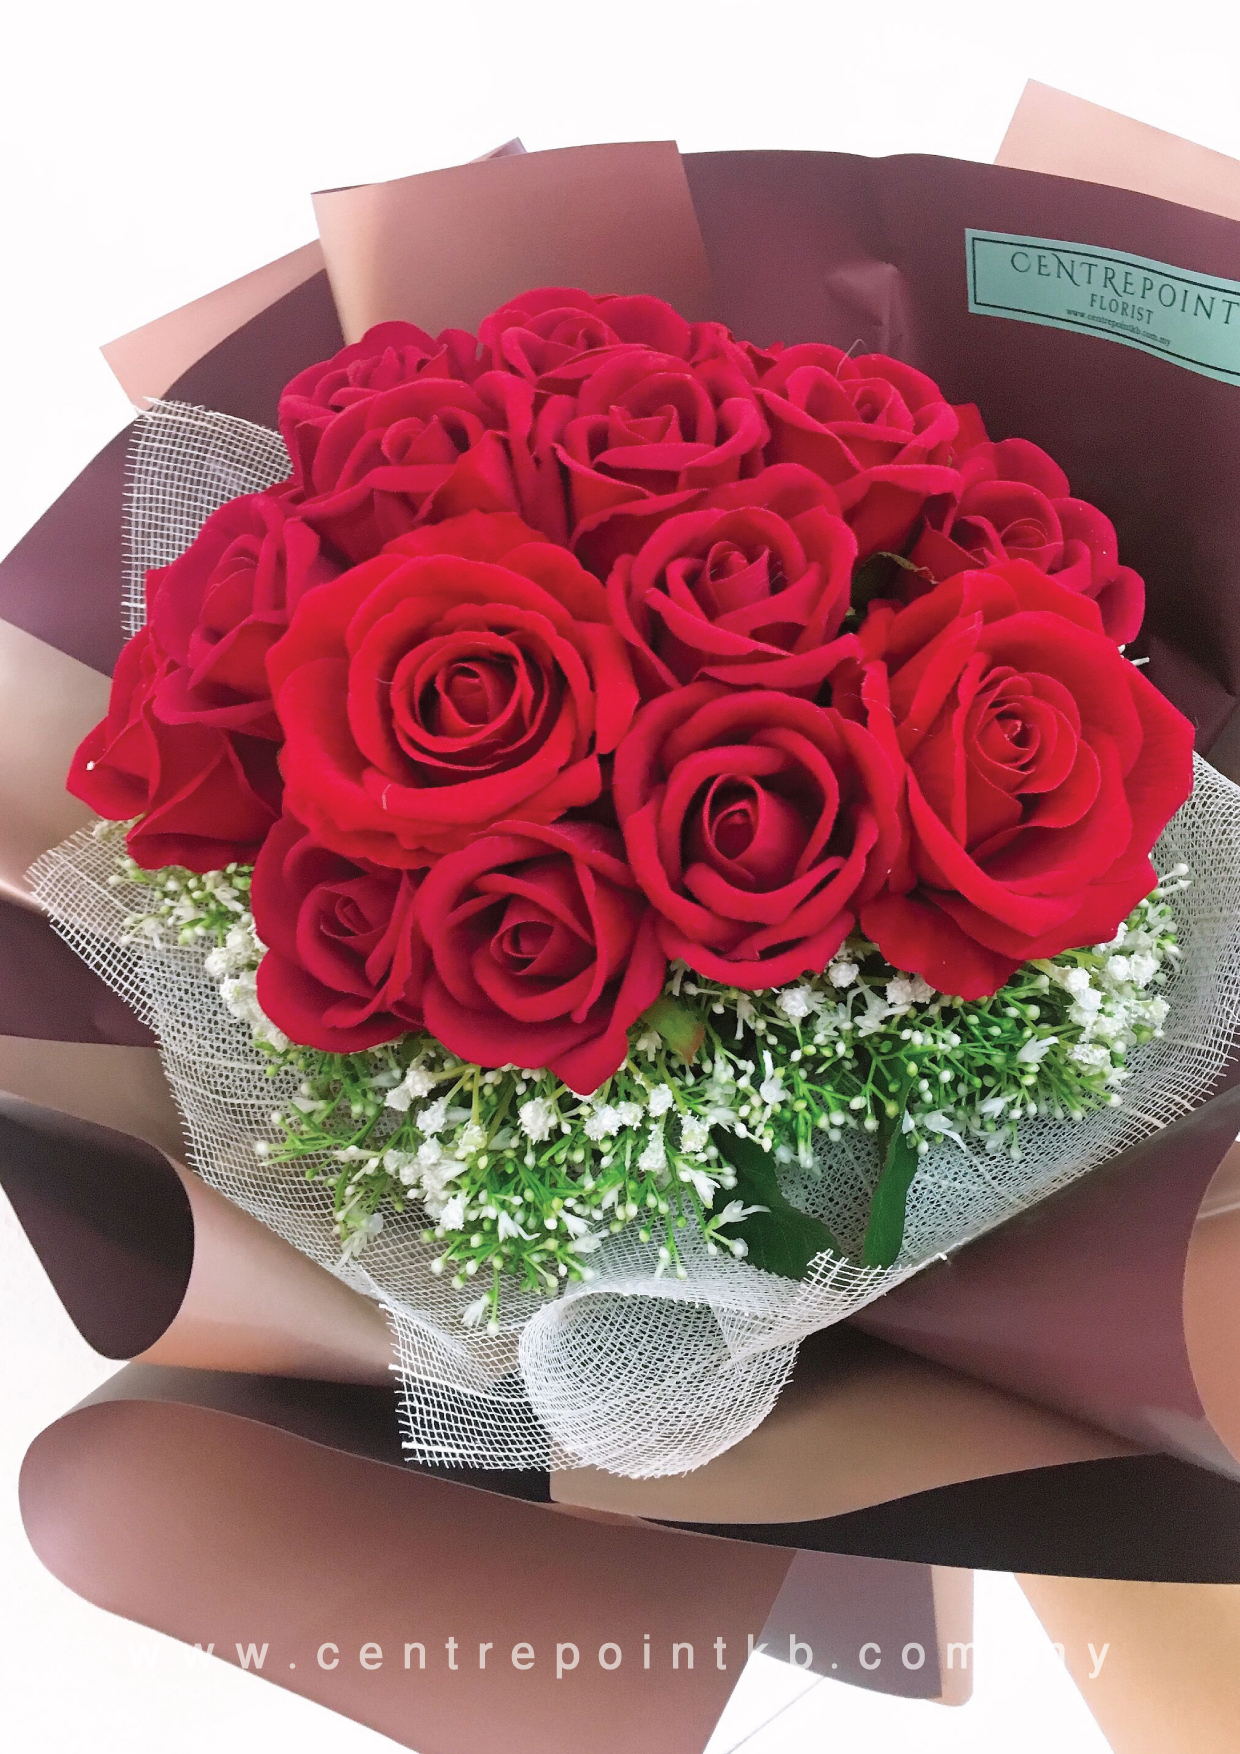 AF Velvet Rose Bouquet 03 (RM 200.00)